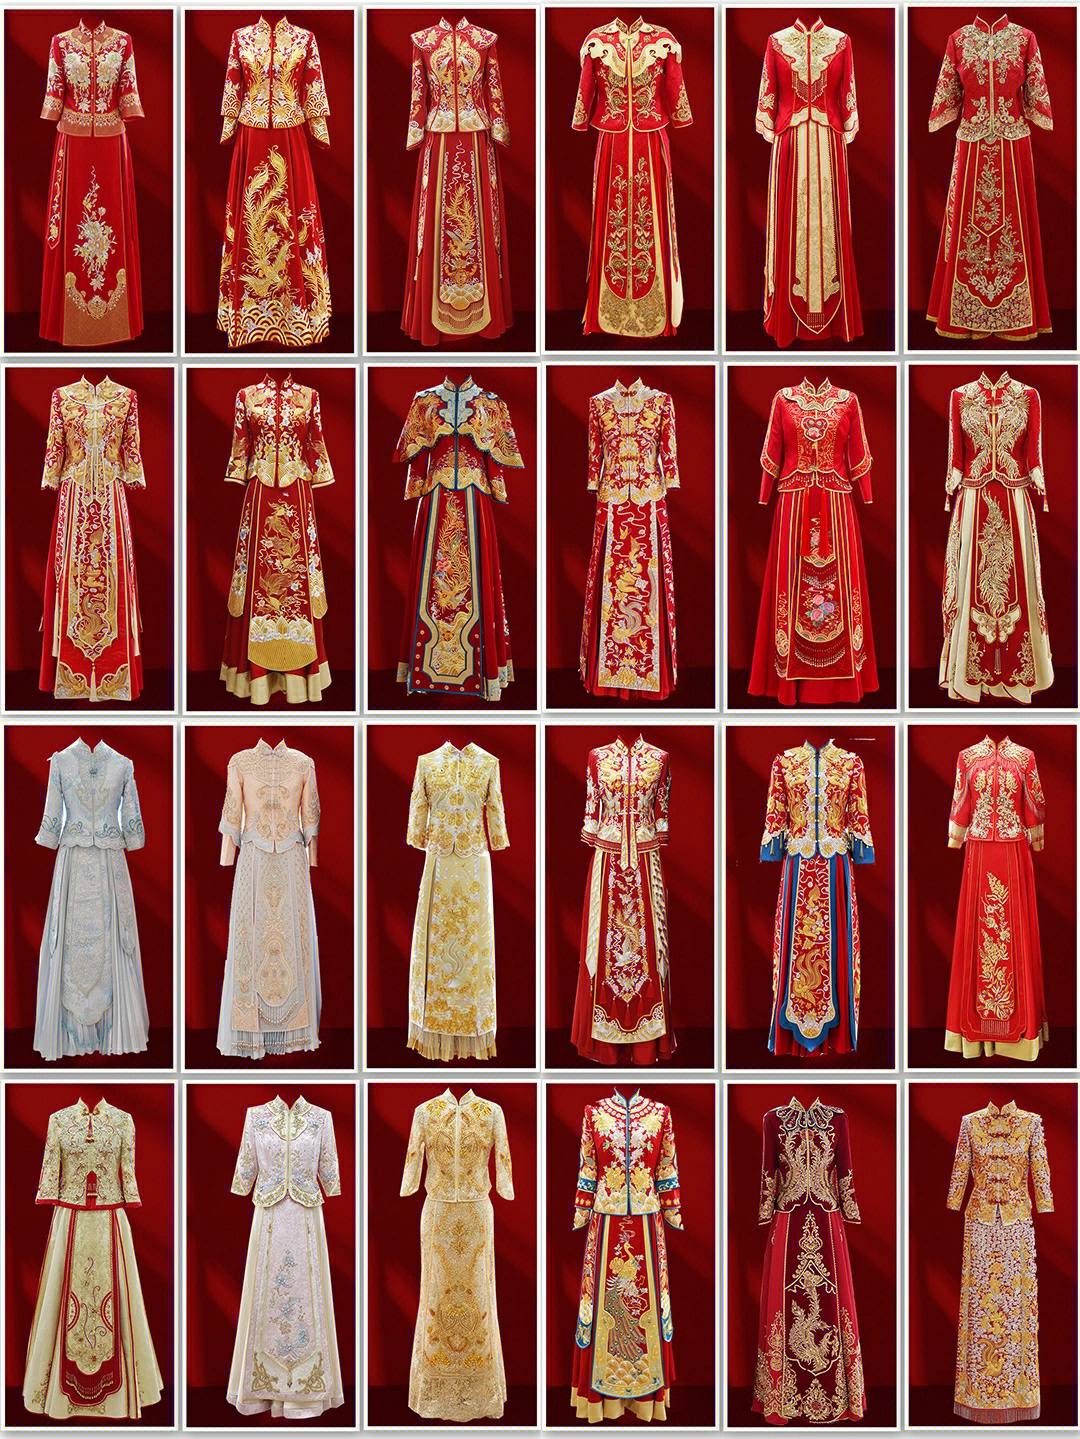 备婚必看24款秀禾服龙凤褂合集北京婚纱